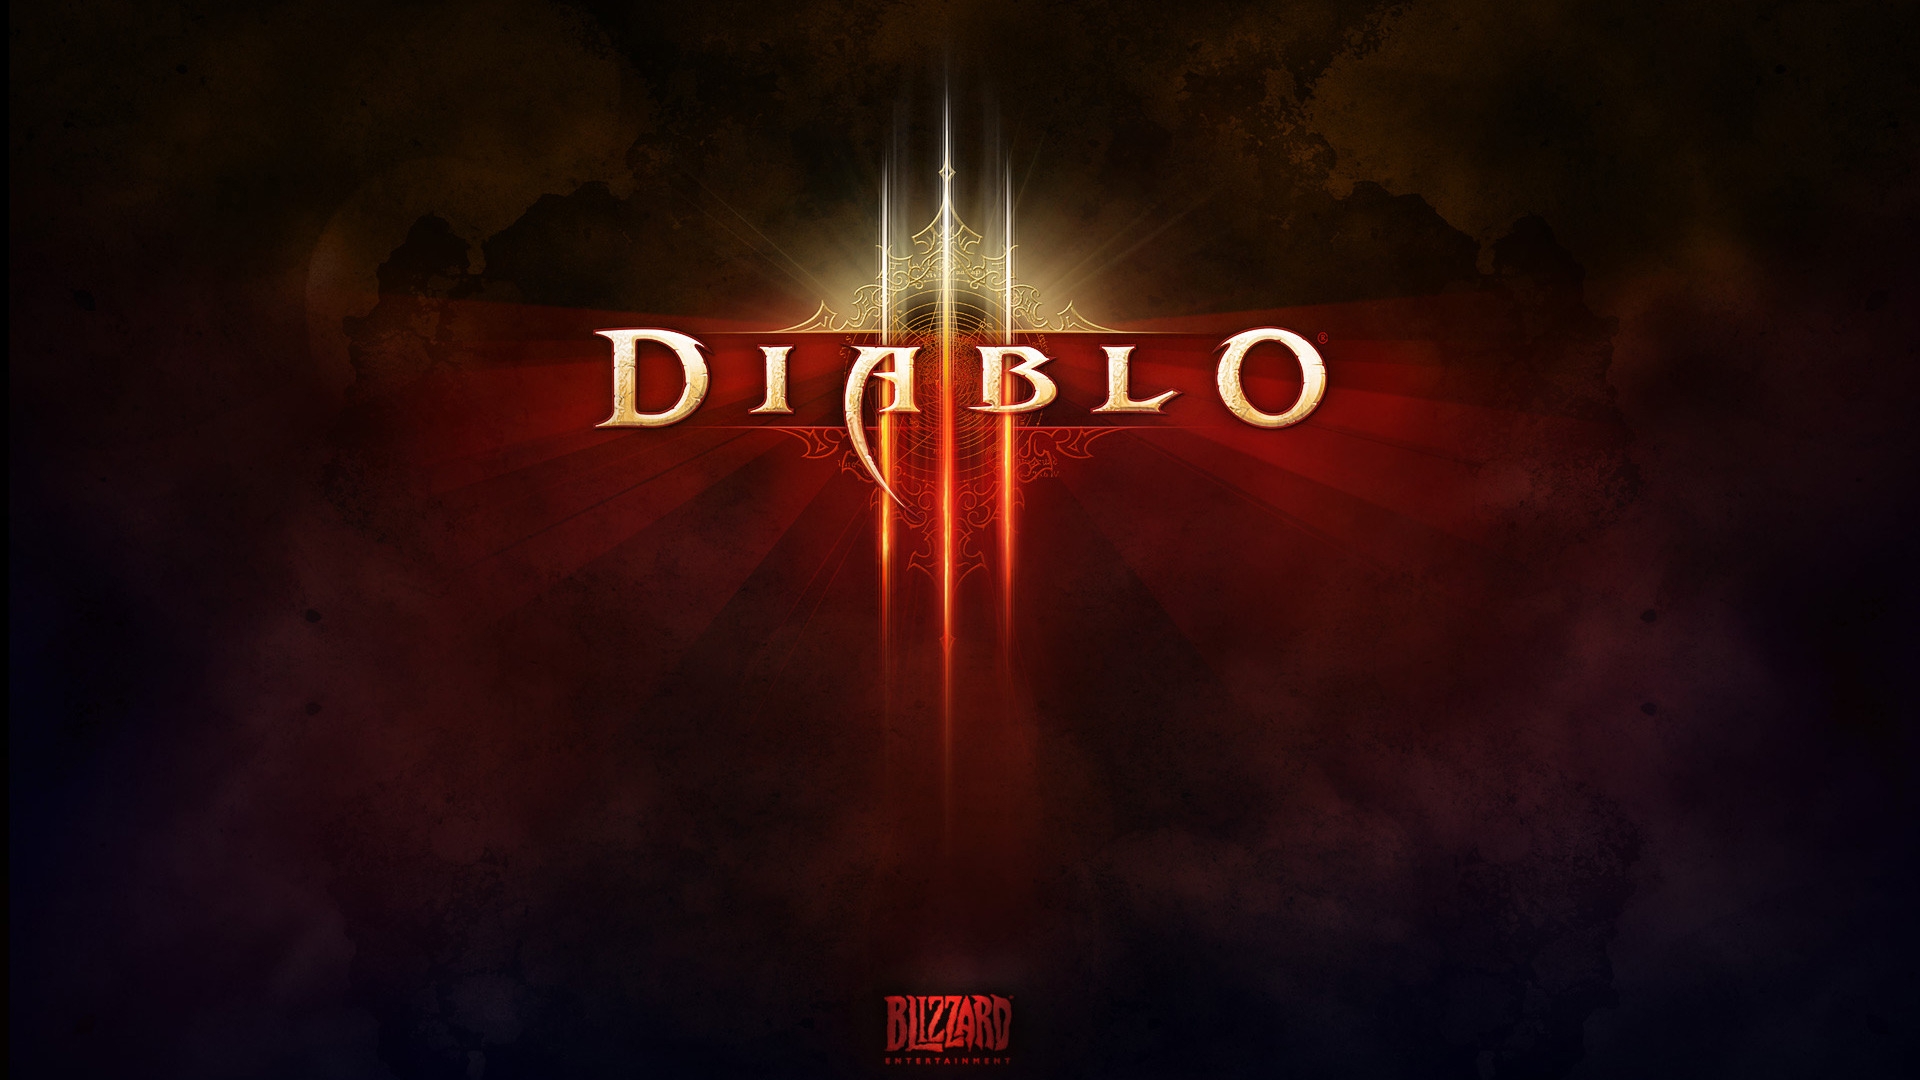 Diablo 3 Game Logo for 1920 x 1080 HDTV 1080p resolution